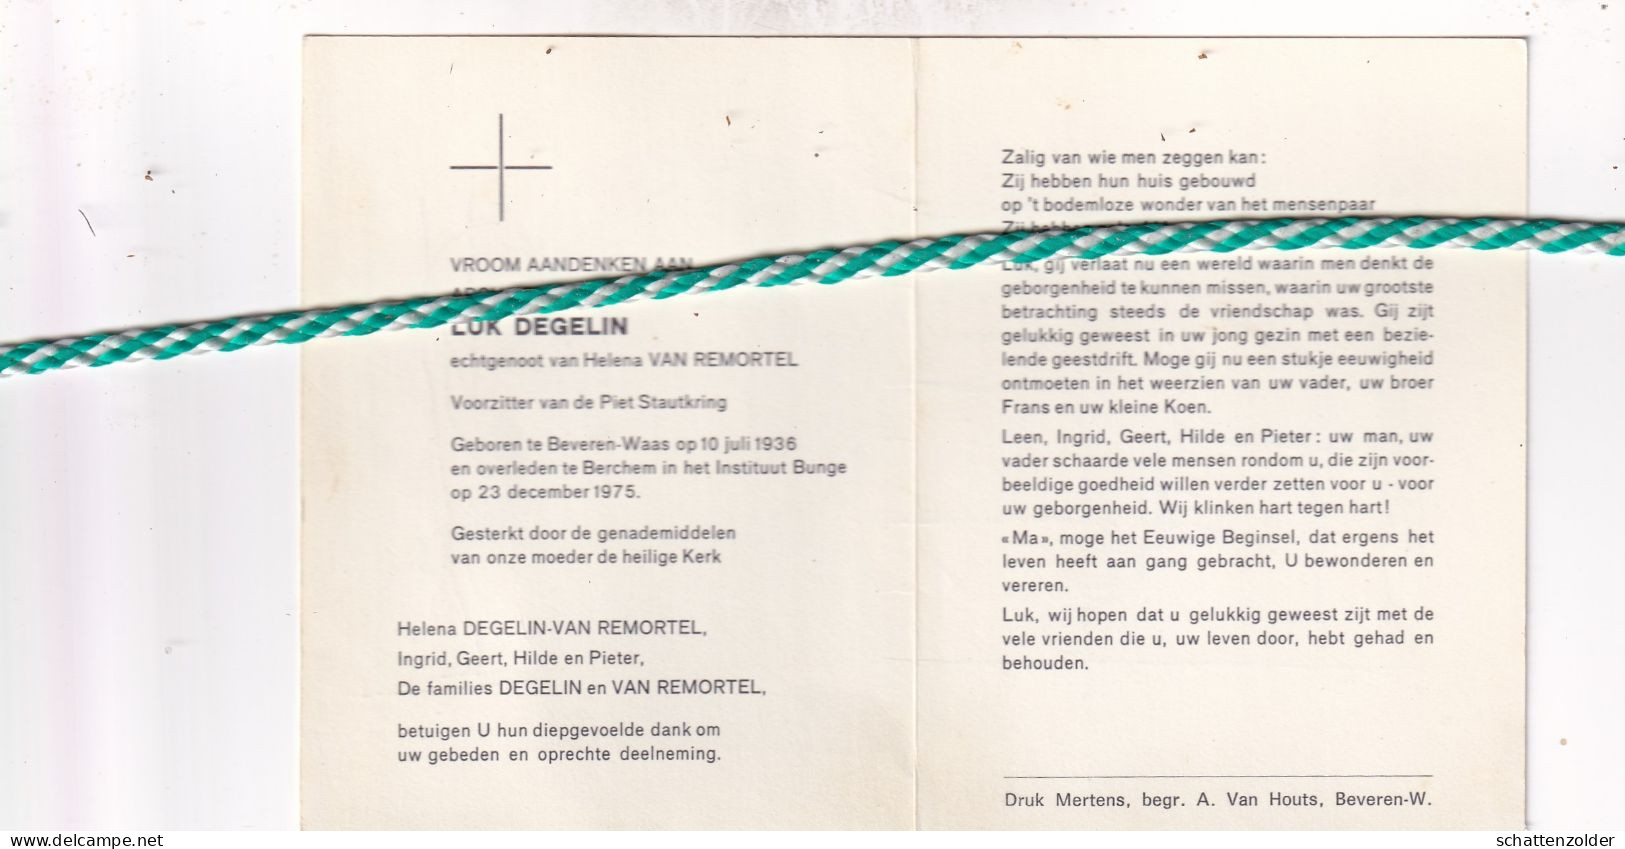 Luk Degelin-Van Remortel, Beveren-Waas 1936, Berchem 1975. Voorzitter Piet Stautkring. Foto - Décès